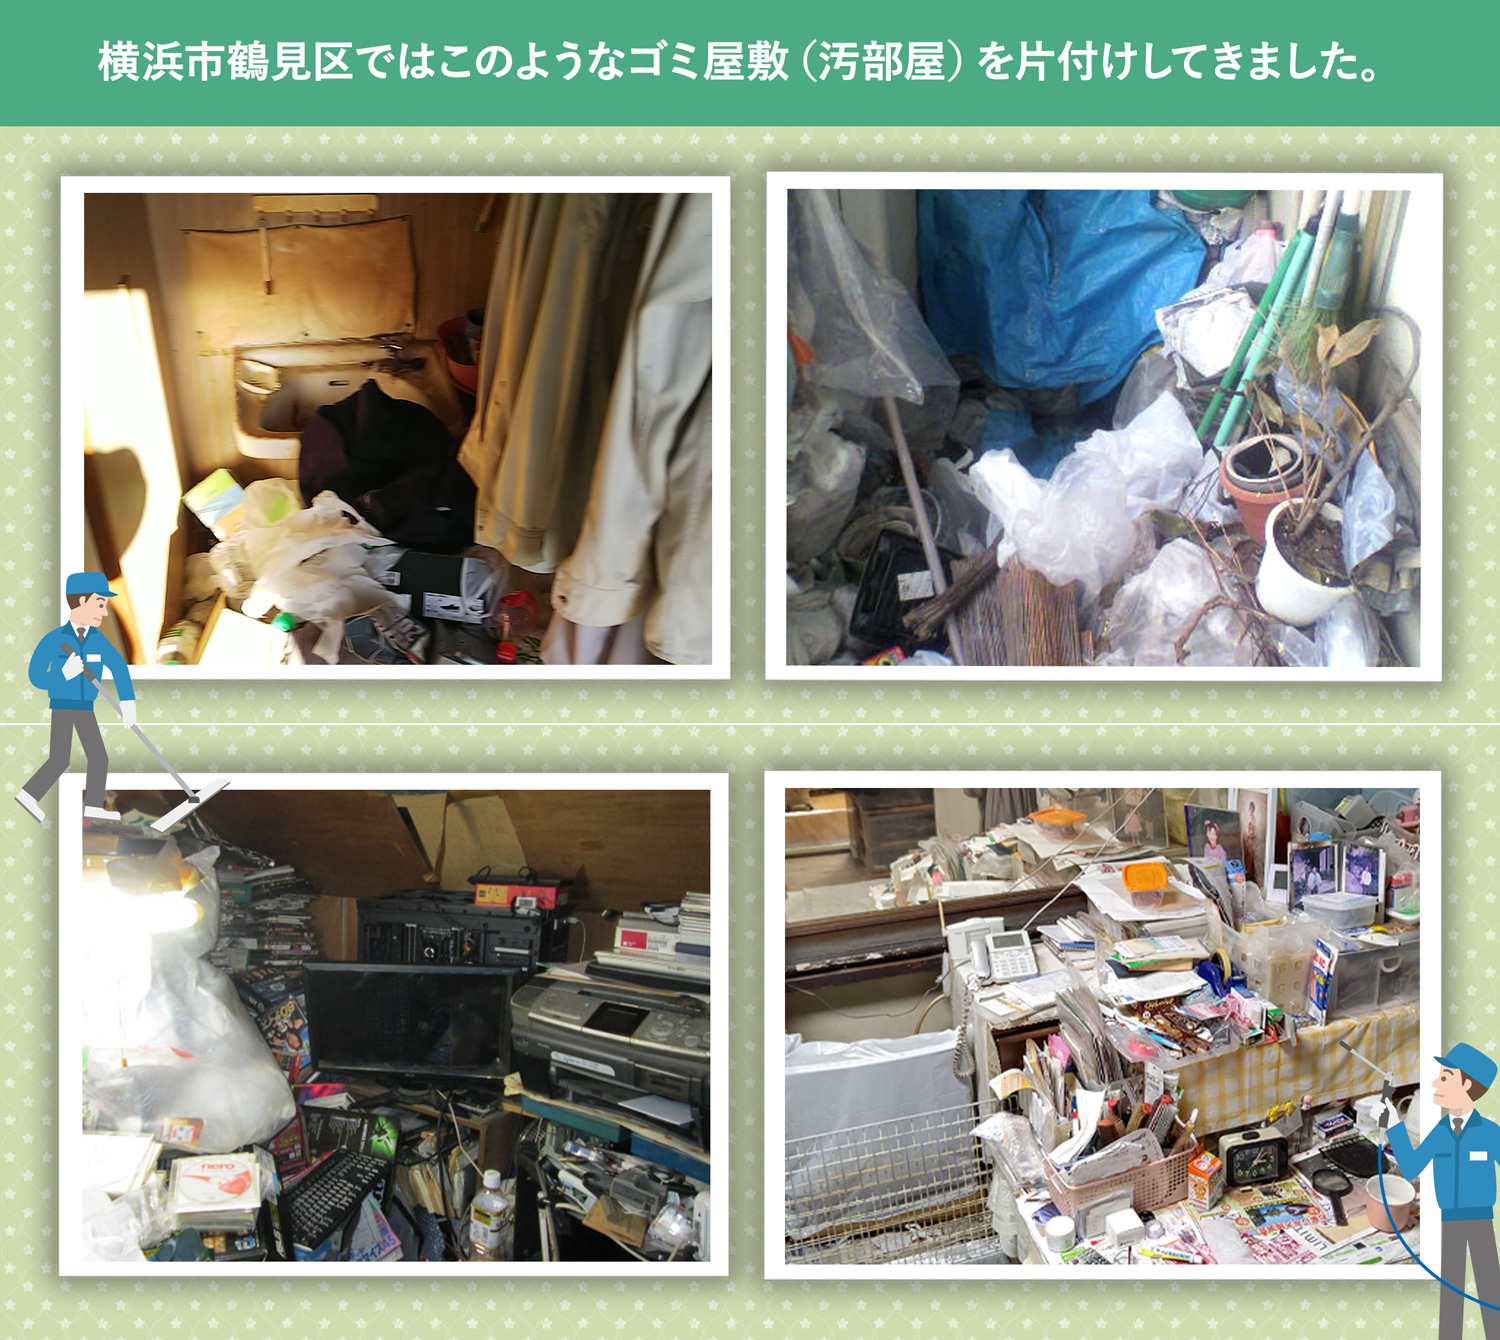 横浜市鶴見区で行ったで行ったごみ屋敷・汚部屋の片付けの一例